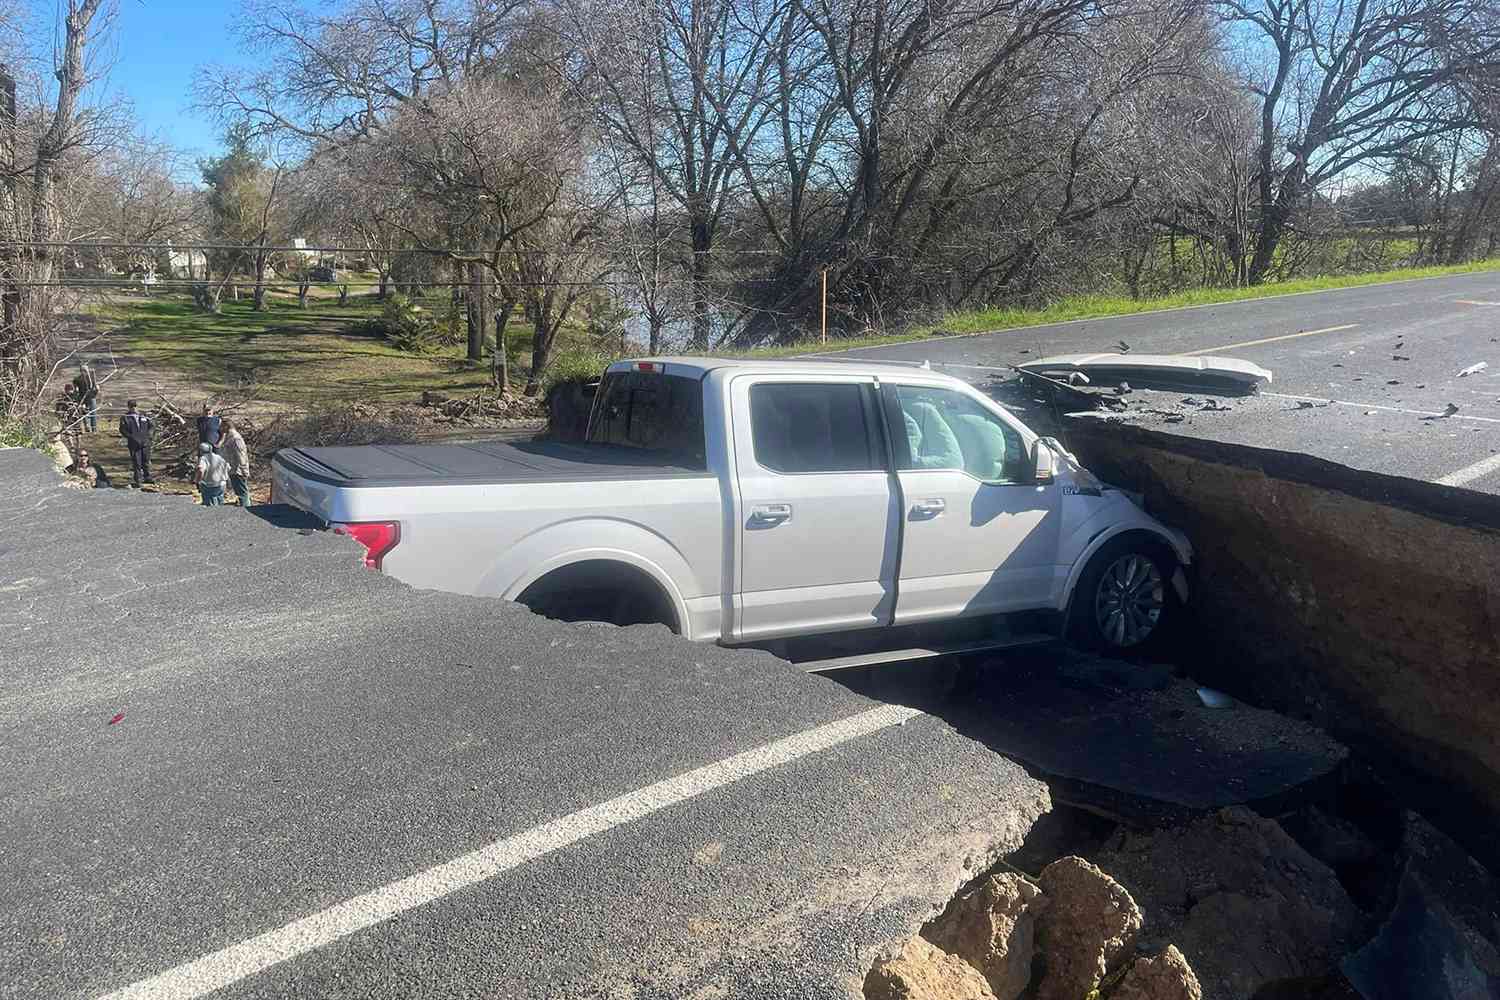 Policiais da Califórnia em 'perda de palavras' depois que 3 carros caem em ralo em estrada fechada marcada: 'Isso não pode ser real'